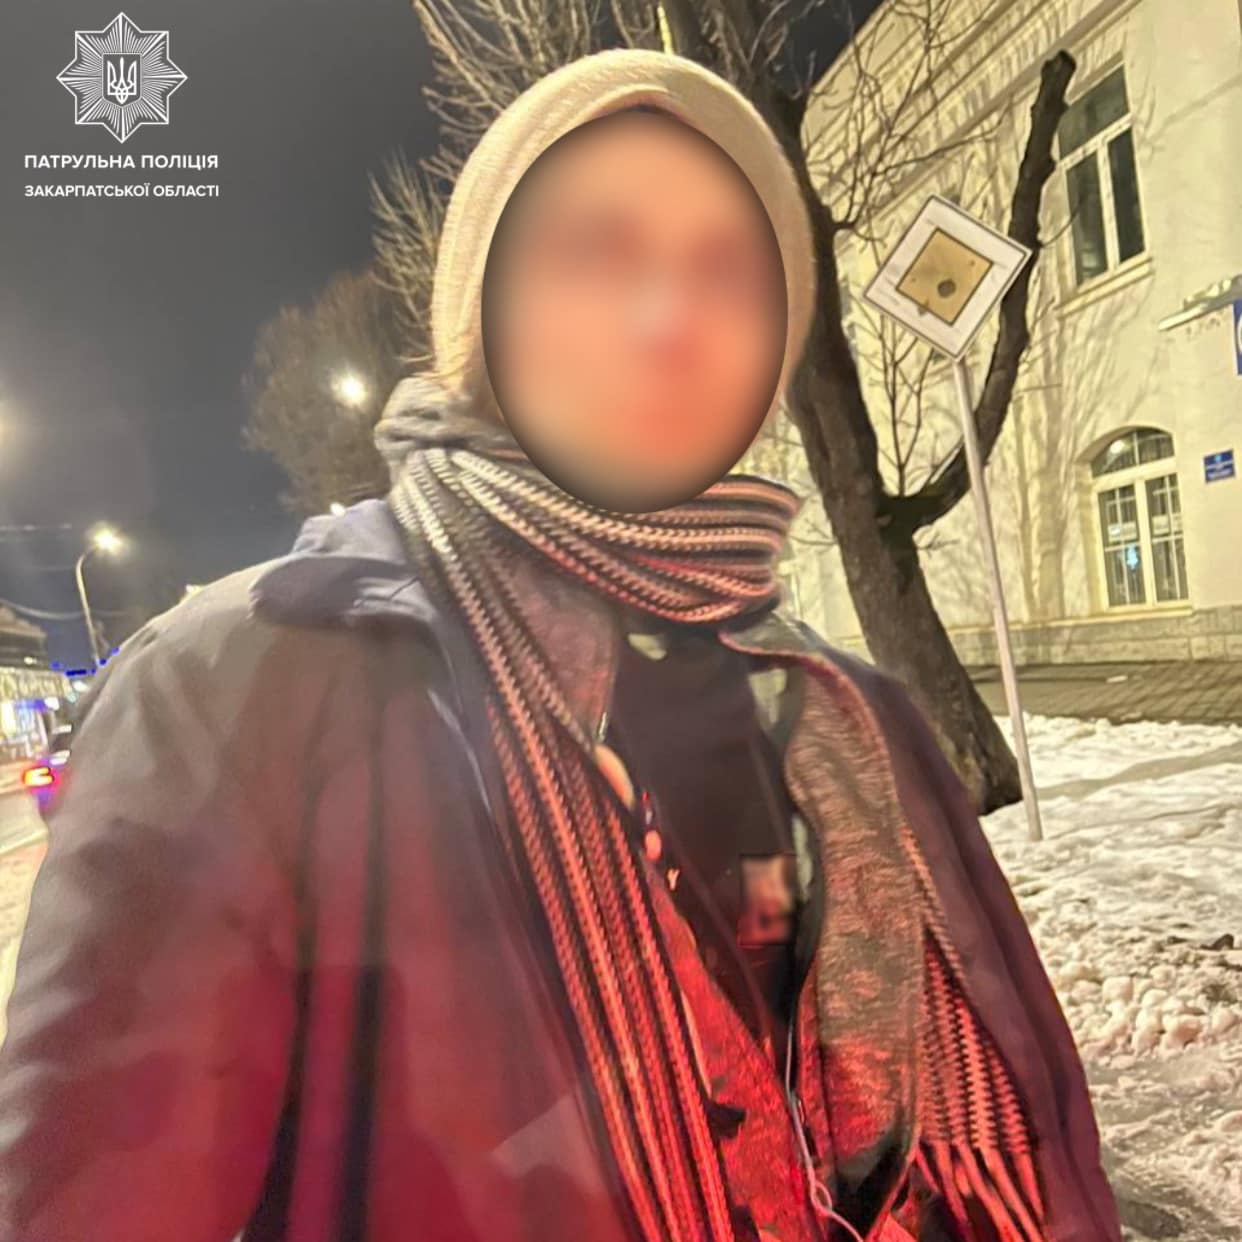 Вчора, близько 23-ї години, інспектори помітили підозрілу особу на вулиці Льва Толстого в Ужгороді.

